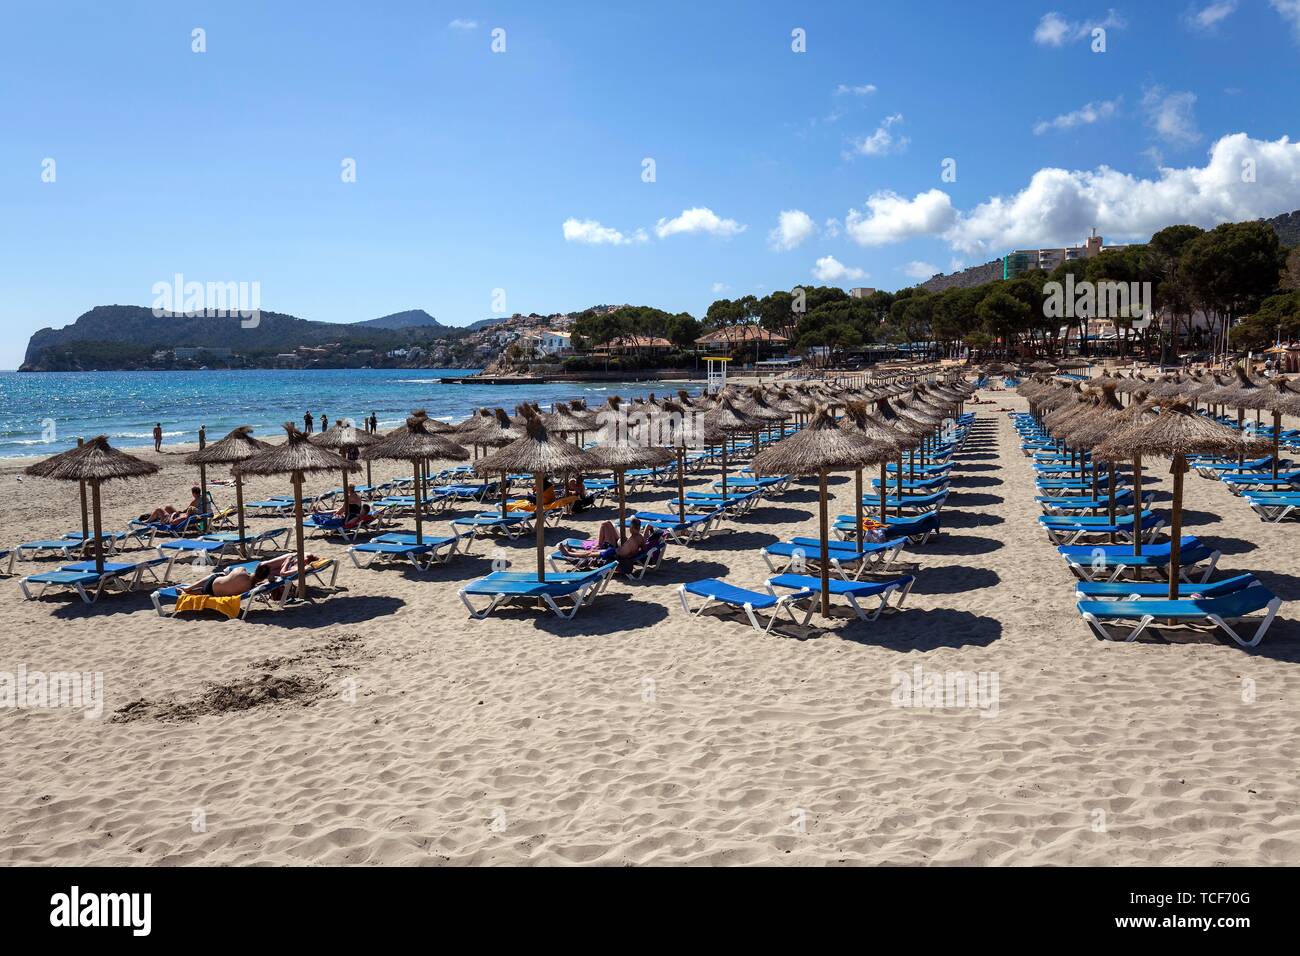 Plage Plage de sable Playa Tora avec parasols et transats, Peguera ou Paguera, Majorque, Îles Baléares, Espagne, Europe Banque D'Images